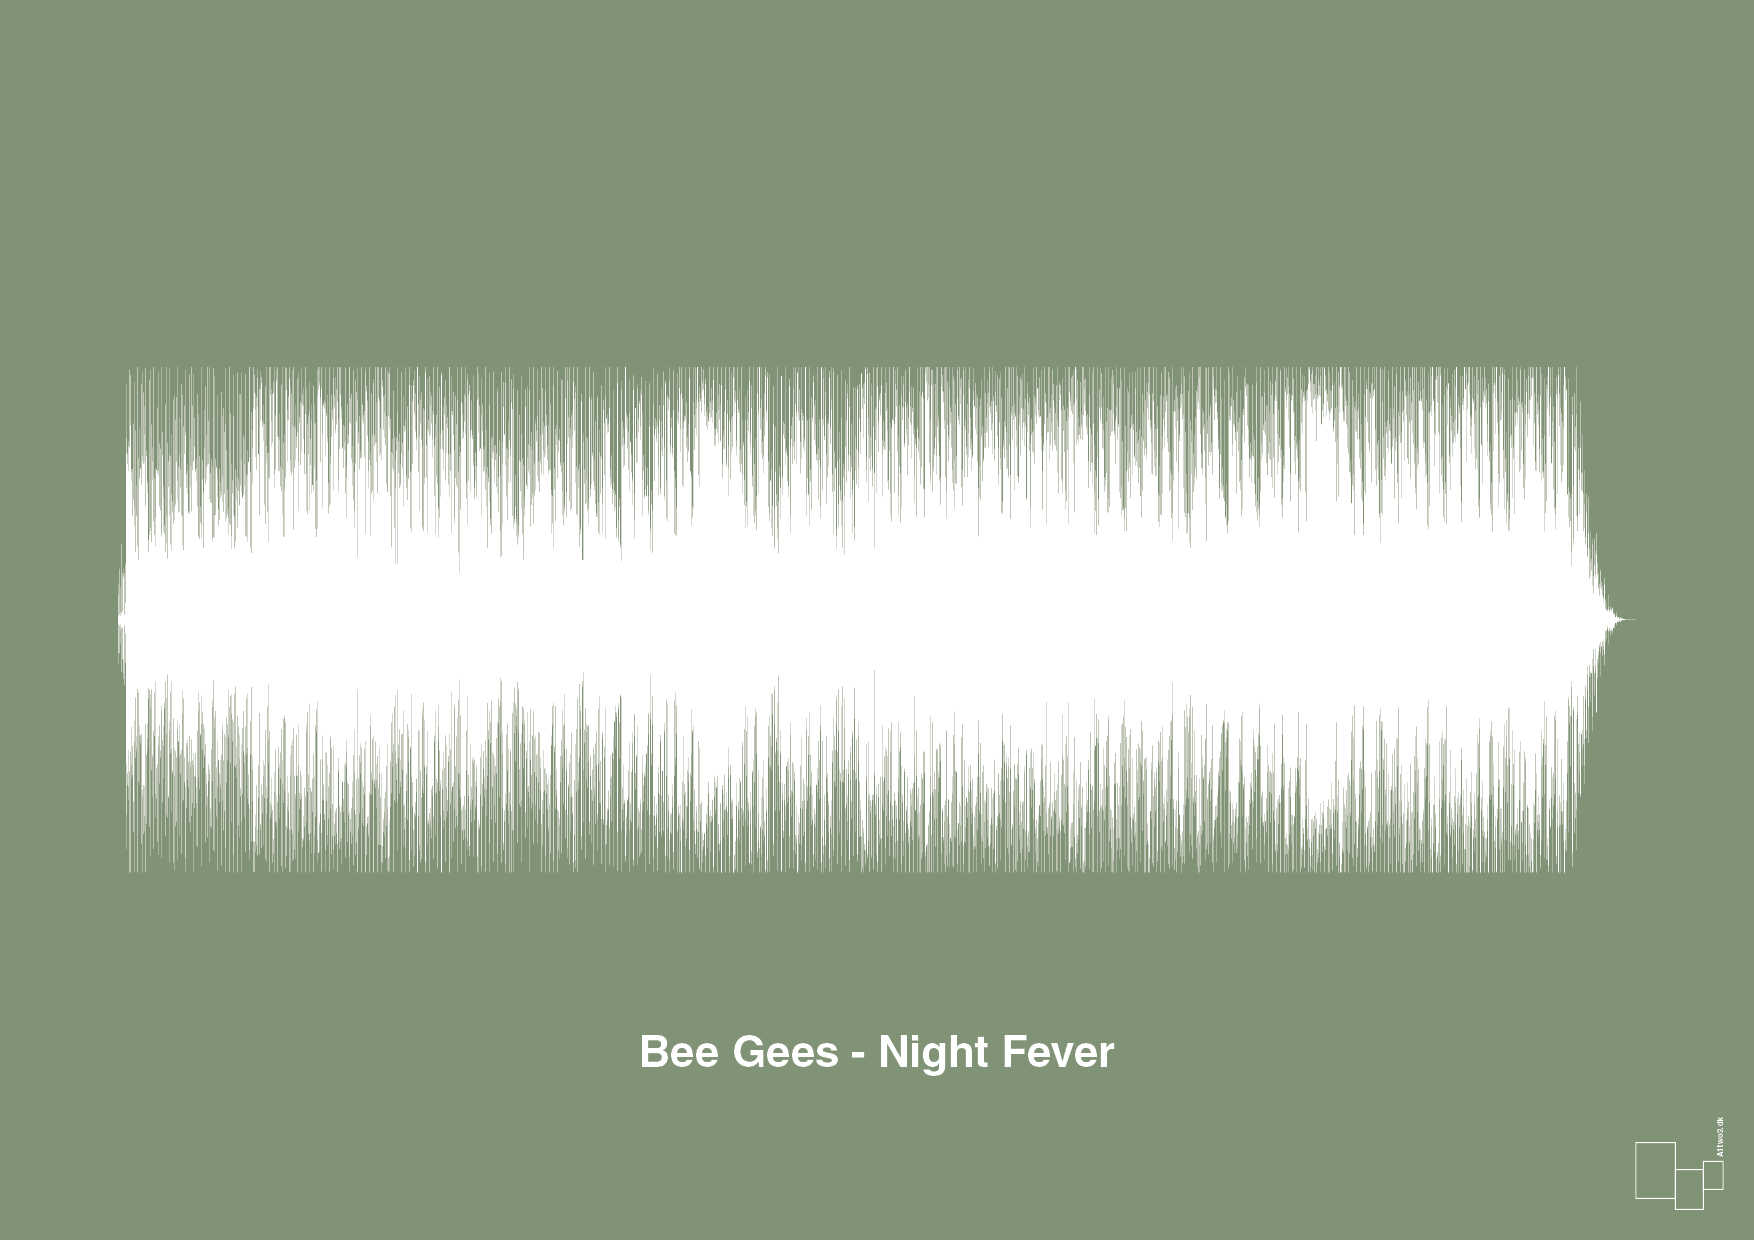 bee gees - night fever - Plakat med Musik i Jade